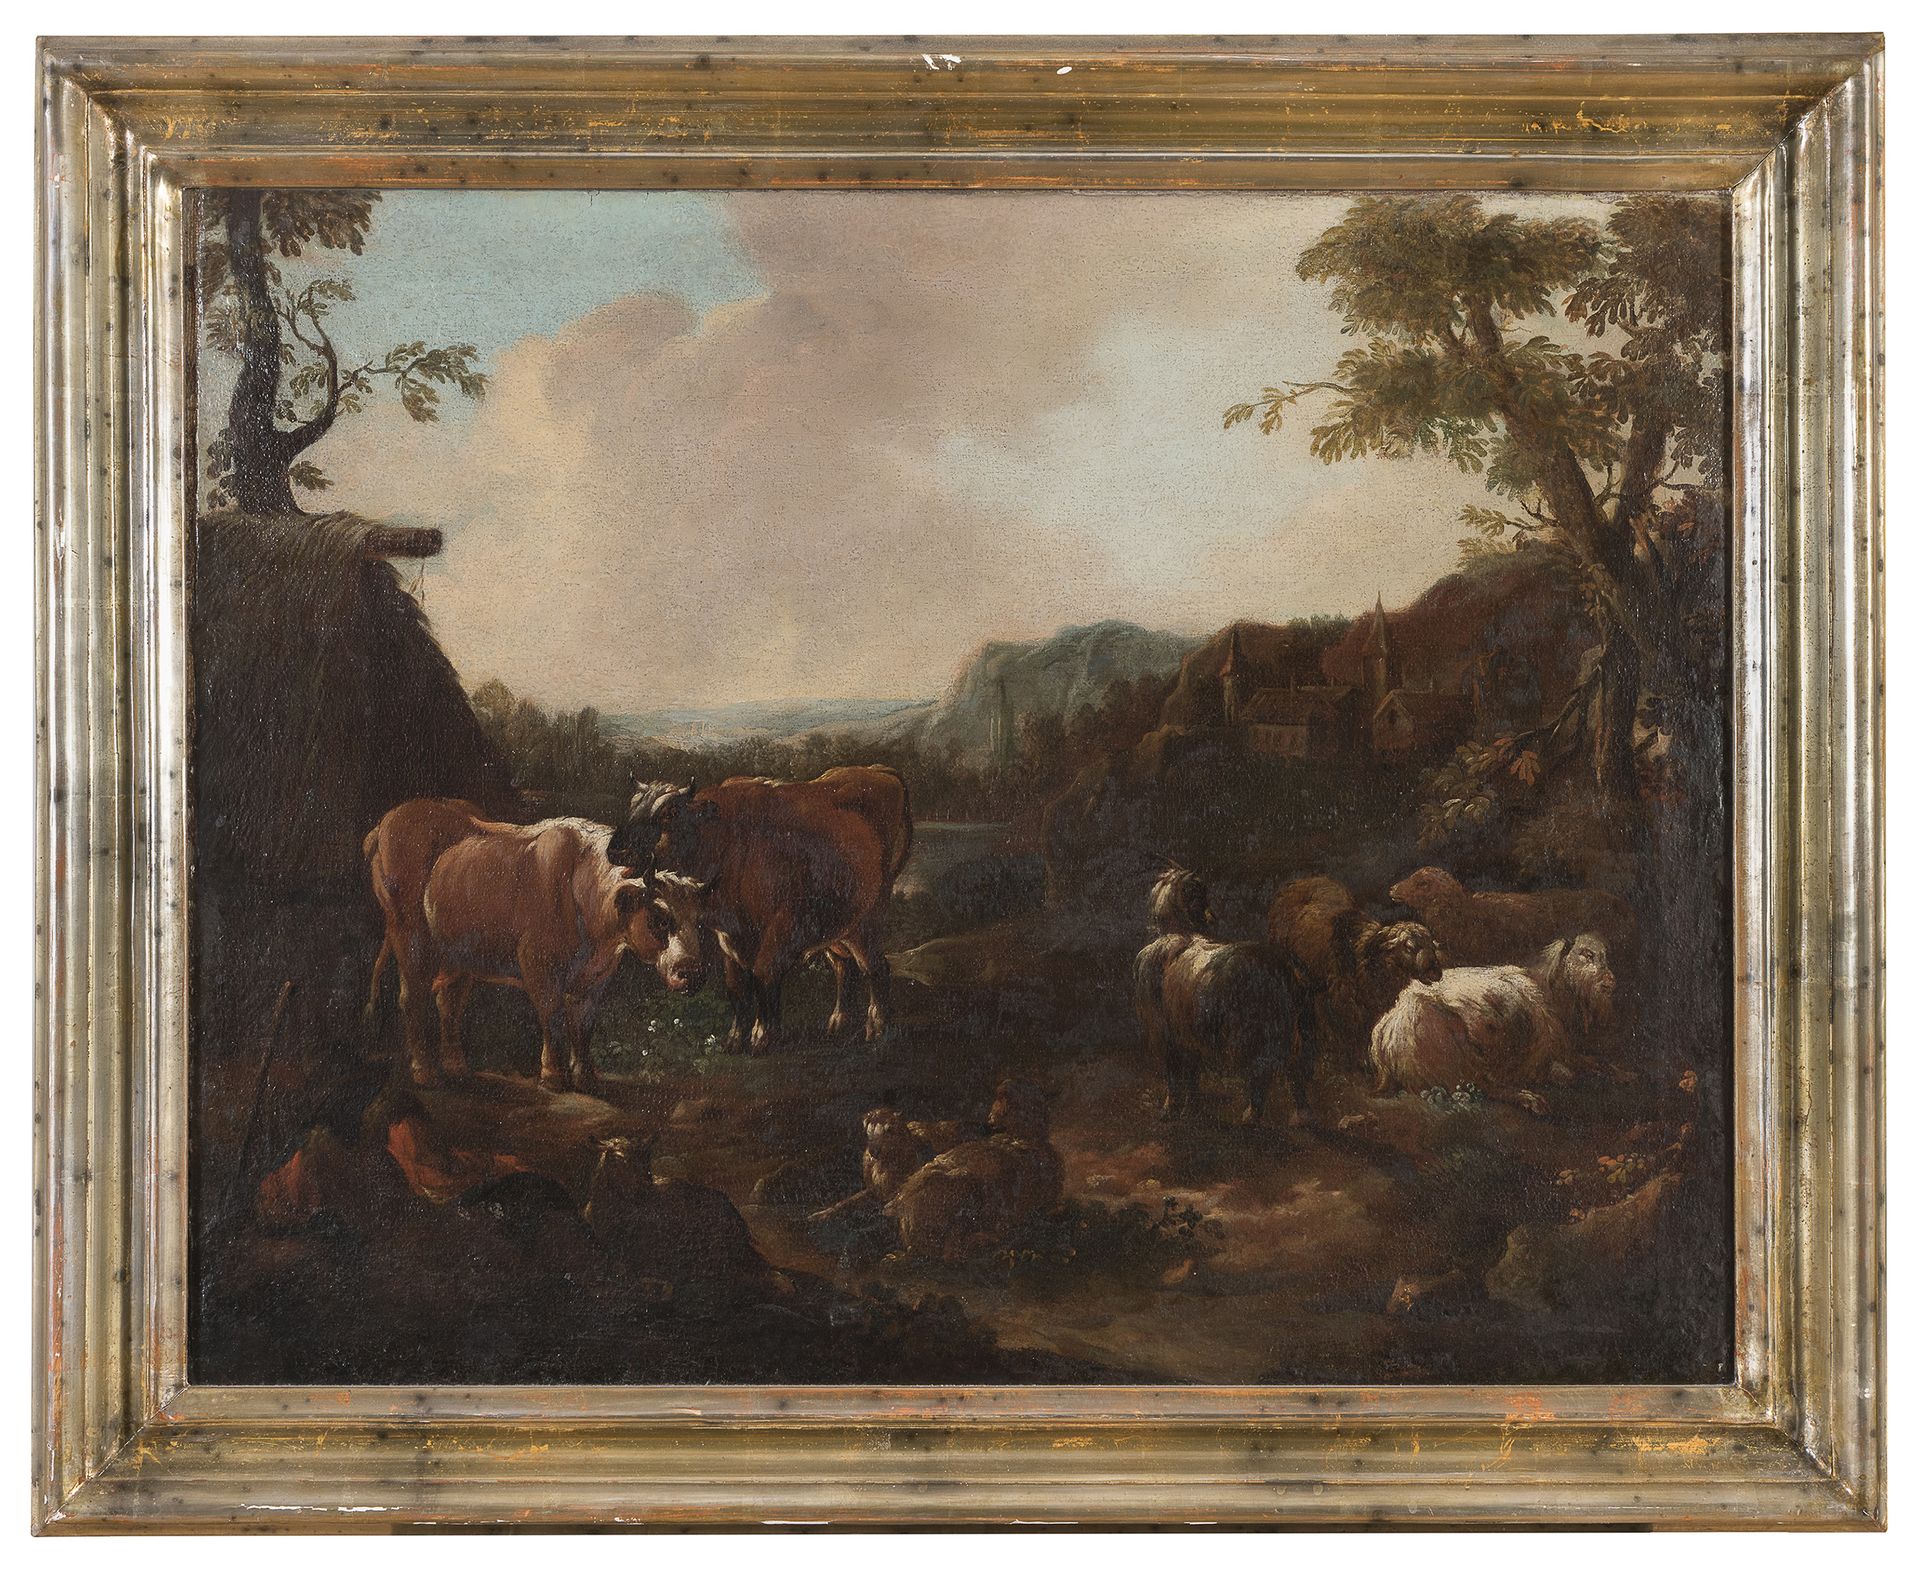 Null PITTORE VENETO, XVIII SECOLO



Paesaggio con pastori a riposo

Paesaggio c&hellip;